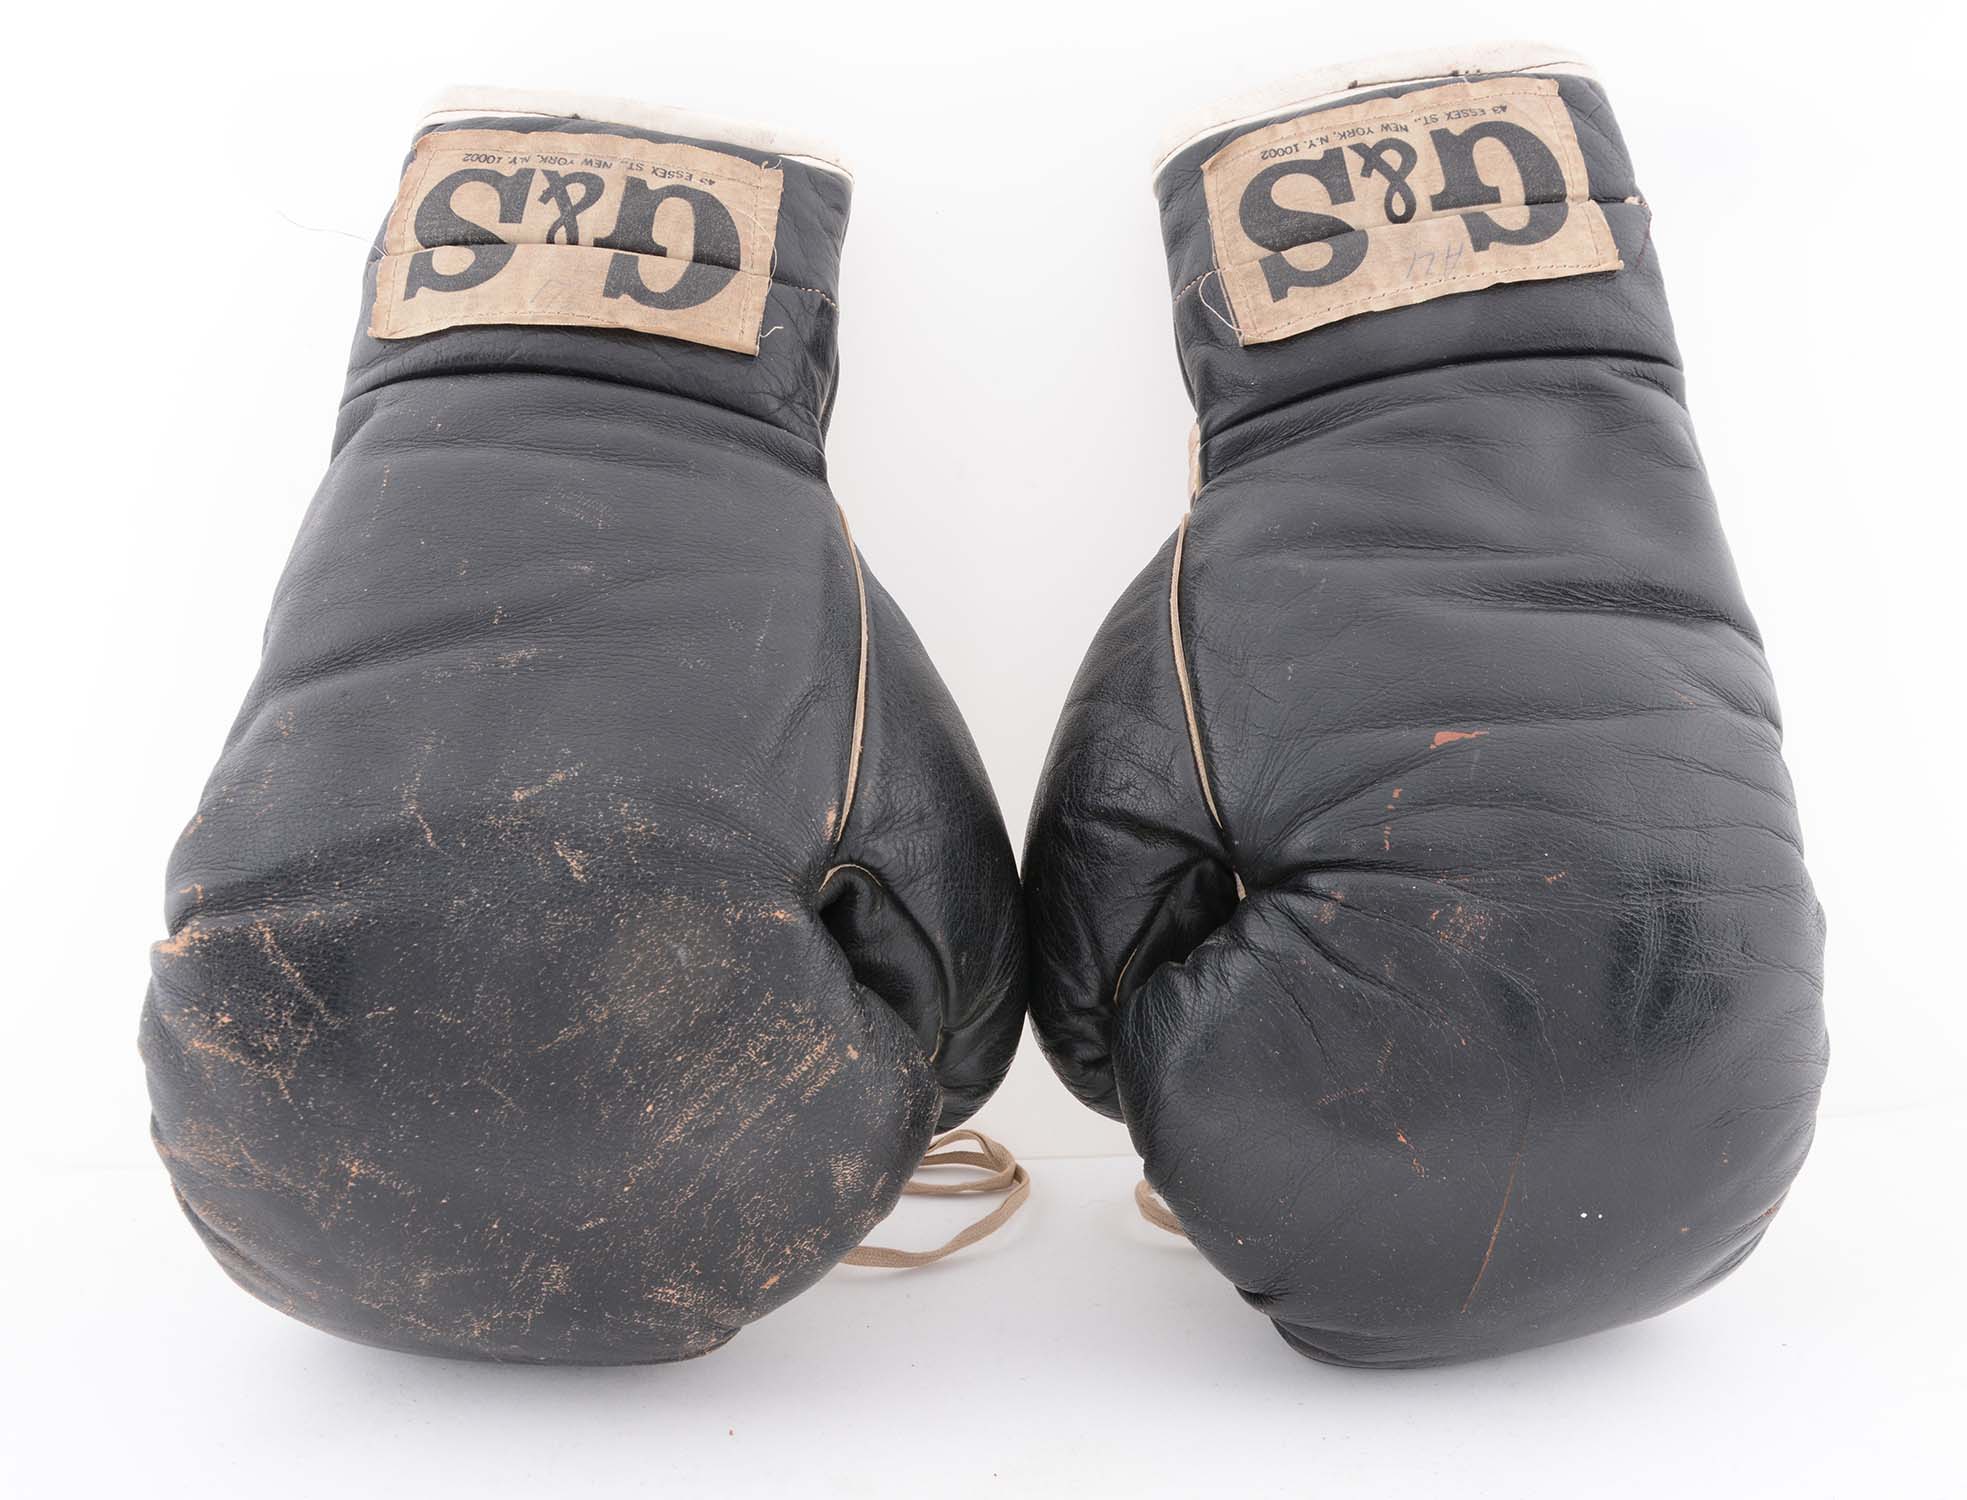 1972 Era Muhammad Ali Sparring Gloves, estimated at $3,000-6,000.